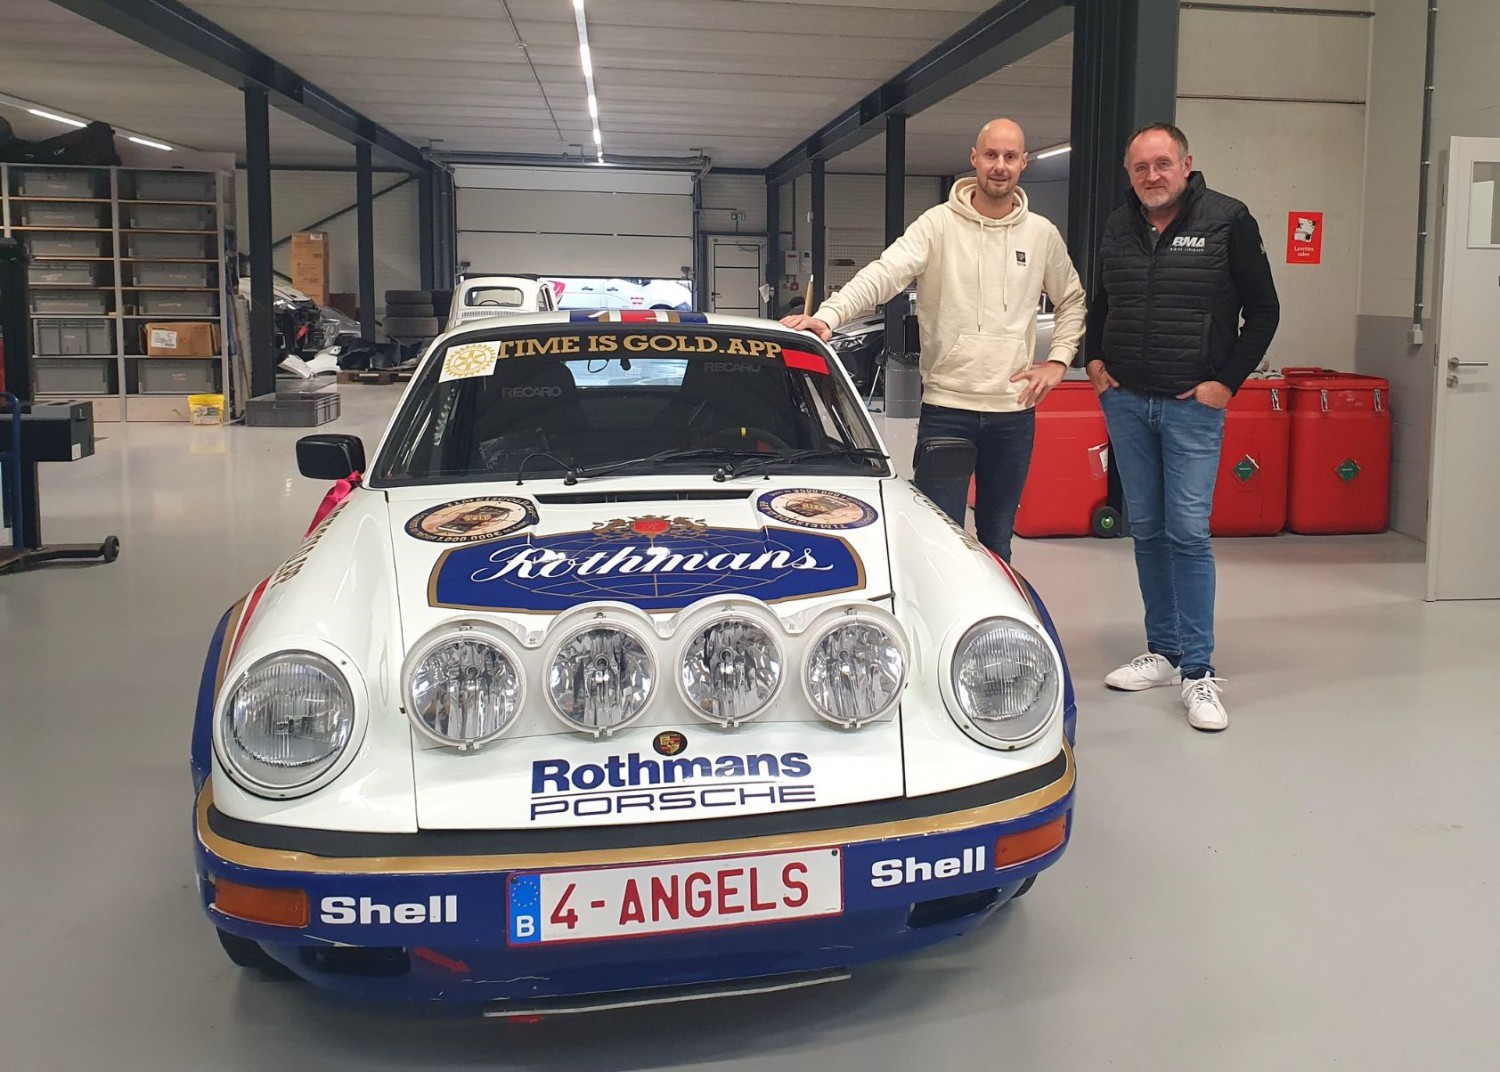 Ex-wereldkampioen wielrennen Tom Boonen zal zijn debuut maken bij Legend Boucles @ Bastogne achter het stuur van een Porsche 911 BMA!